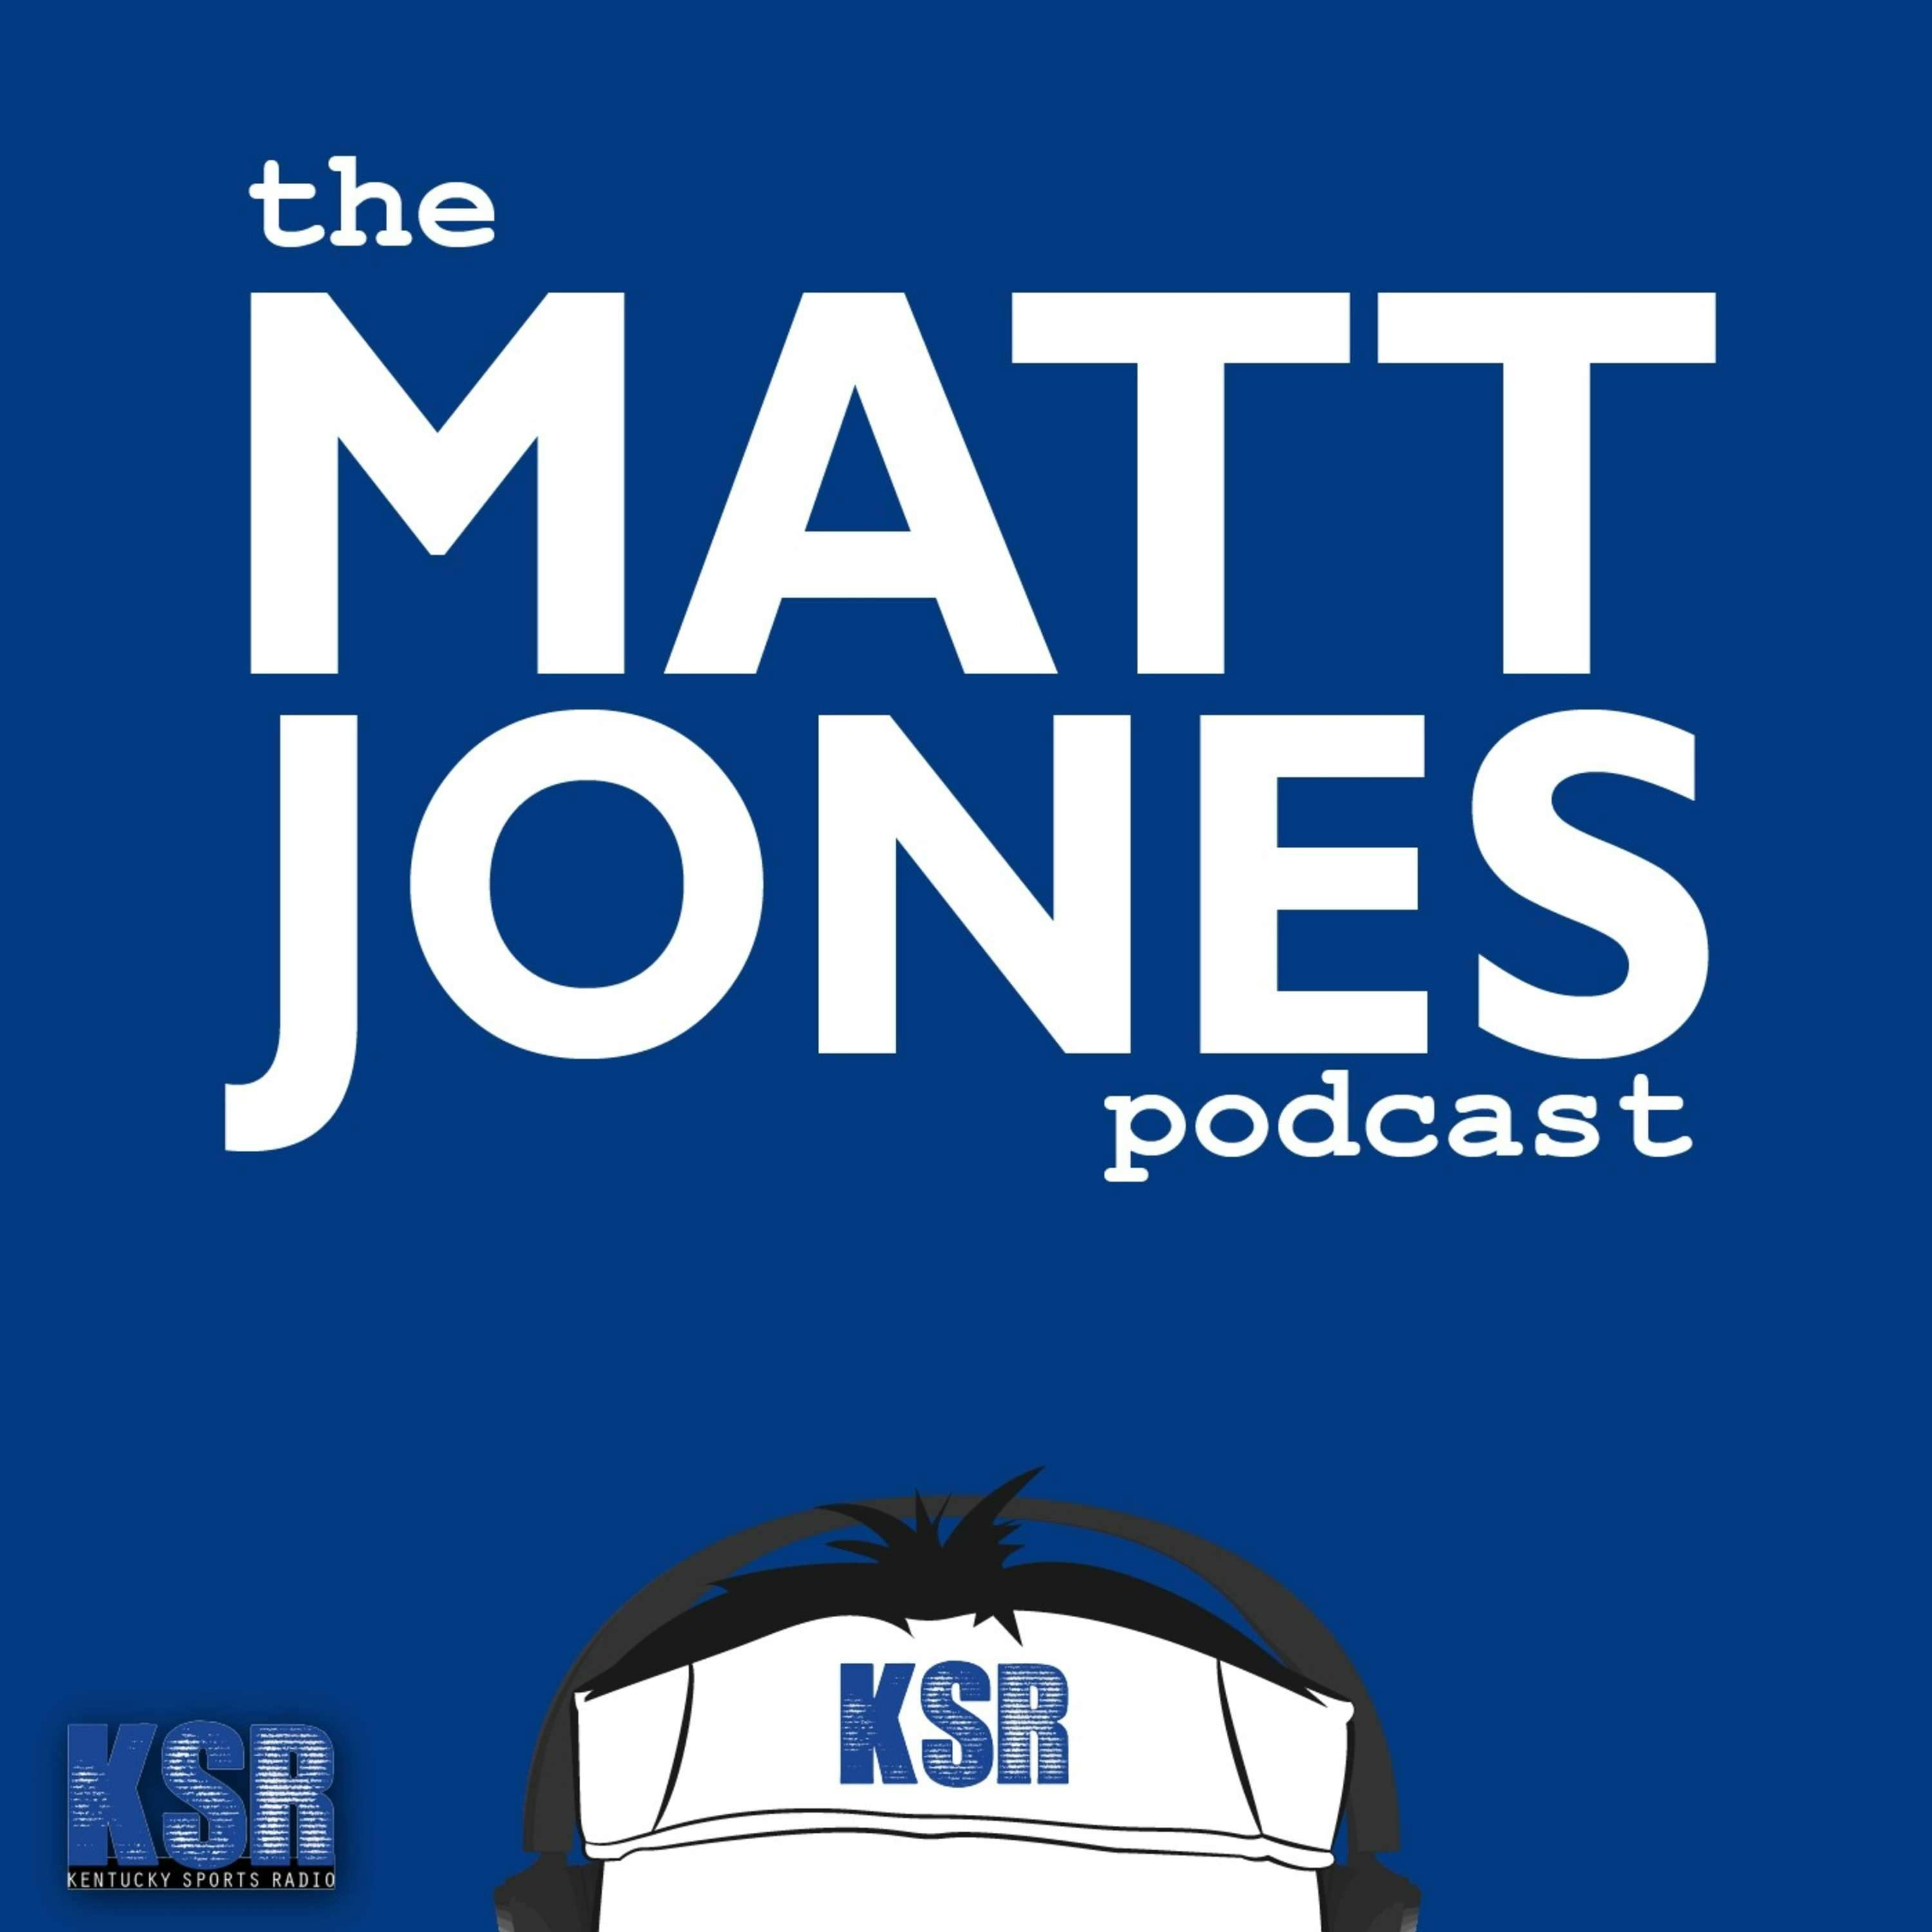 The Matt Jones Podcast E65: Rex Chapman